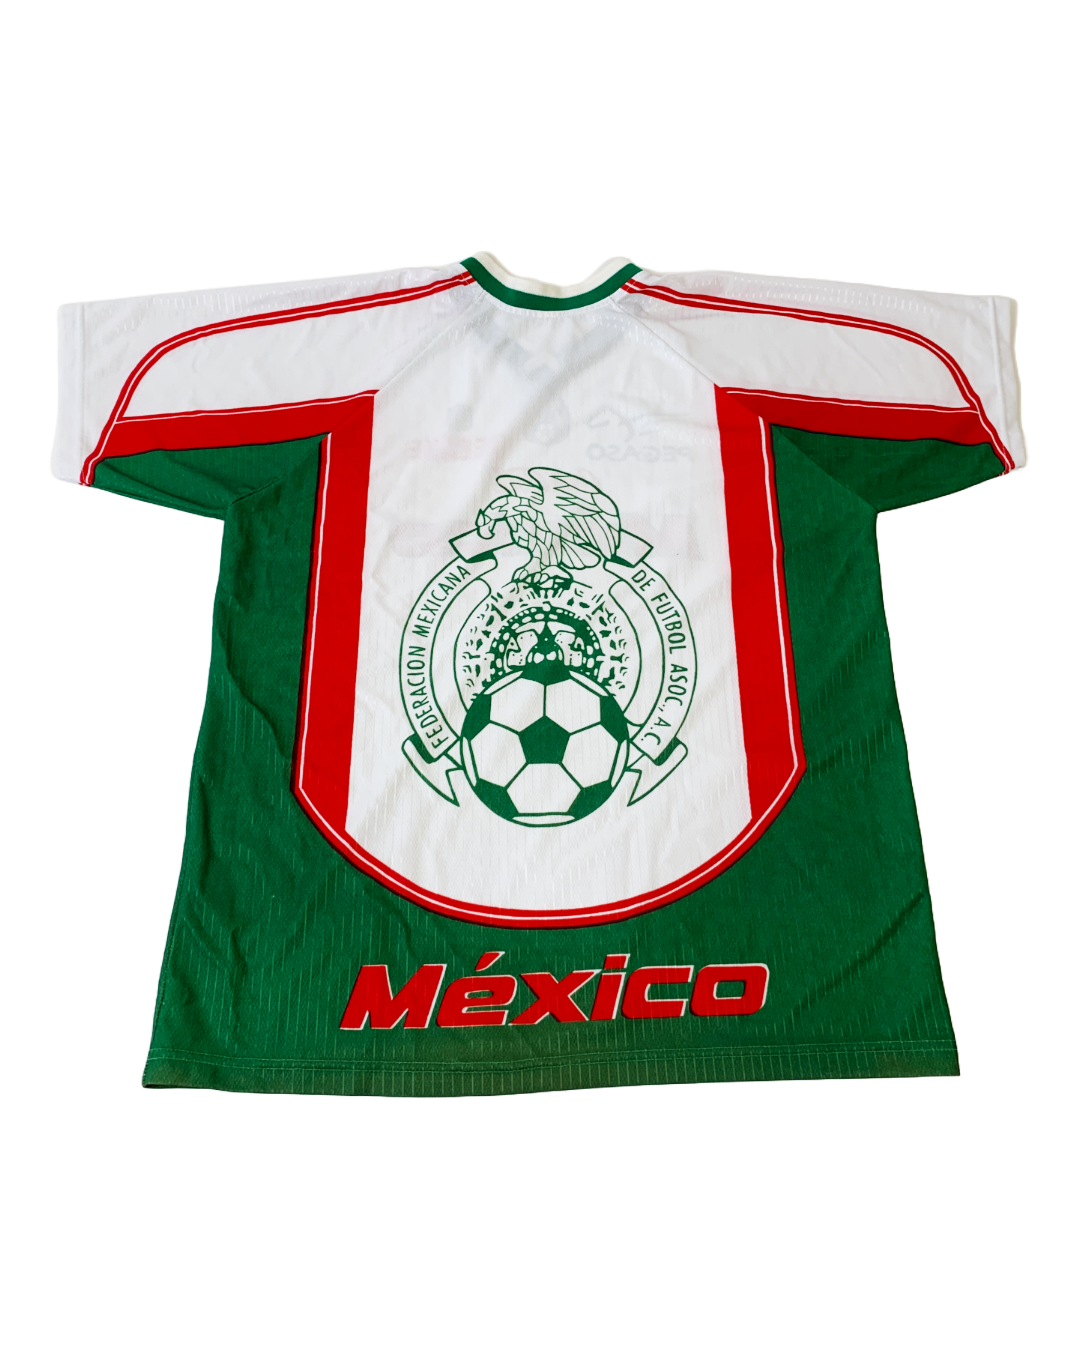 Mexico Vintage Jersey - XL